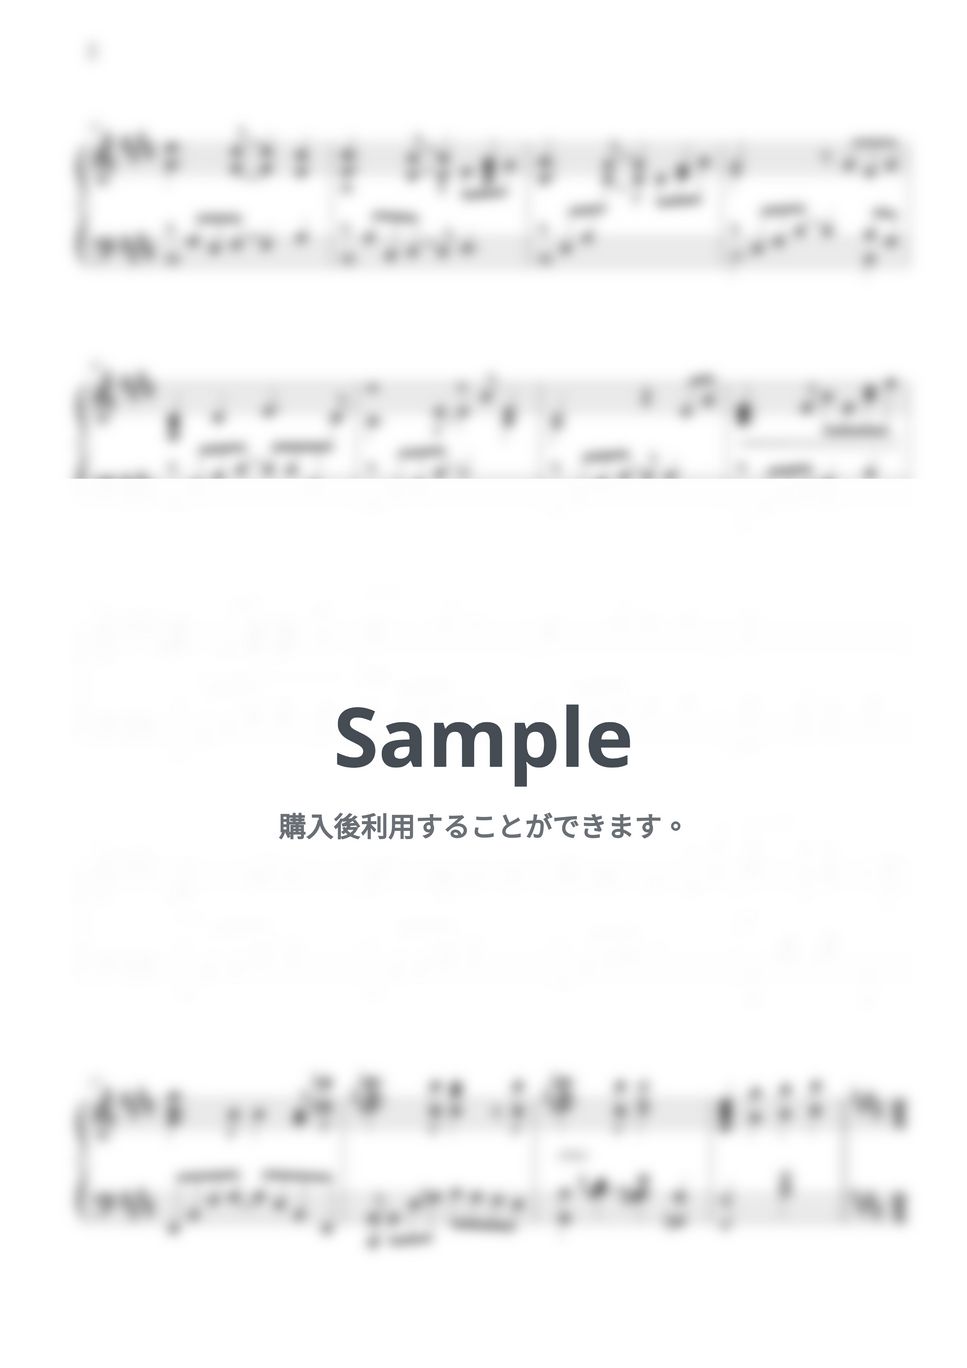 ミス・サイゴンOST - サン・アンド・ムーン by THIS IS PIANO